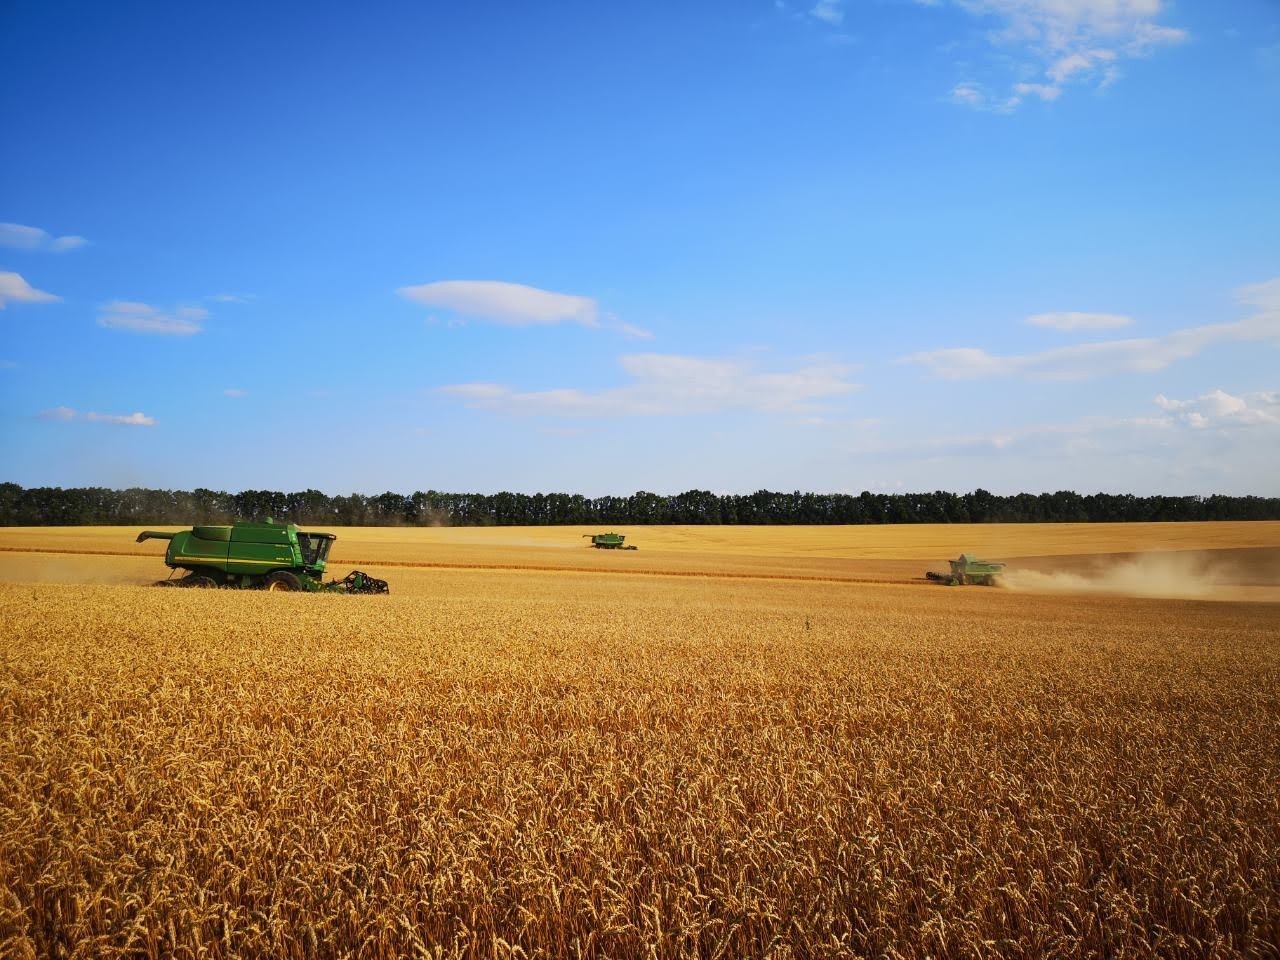 Производственные подразделения УПИ-АГРО завершили уборку ранних зерновых с традиционно высокими результатами